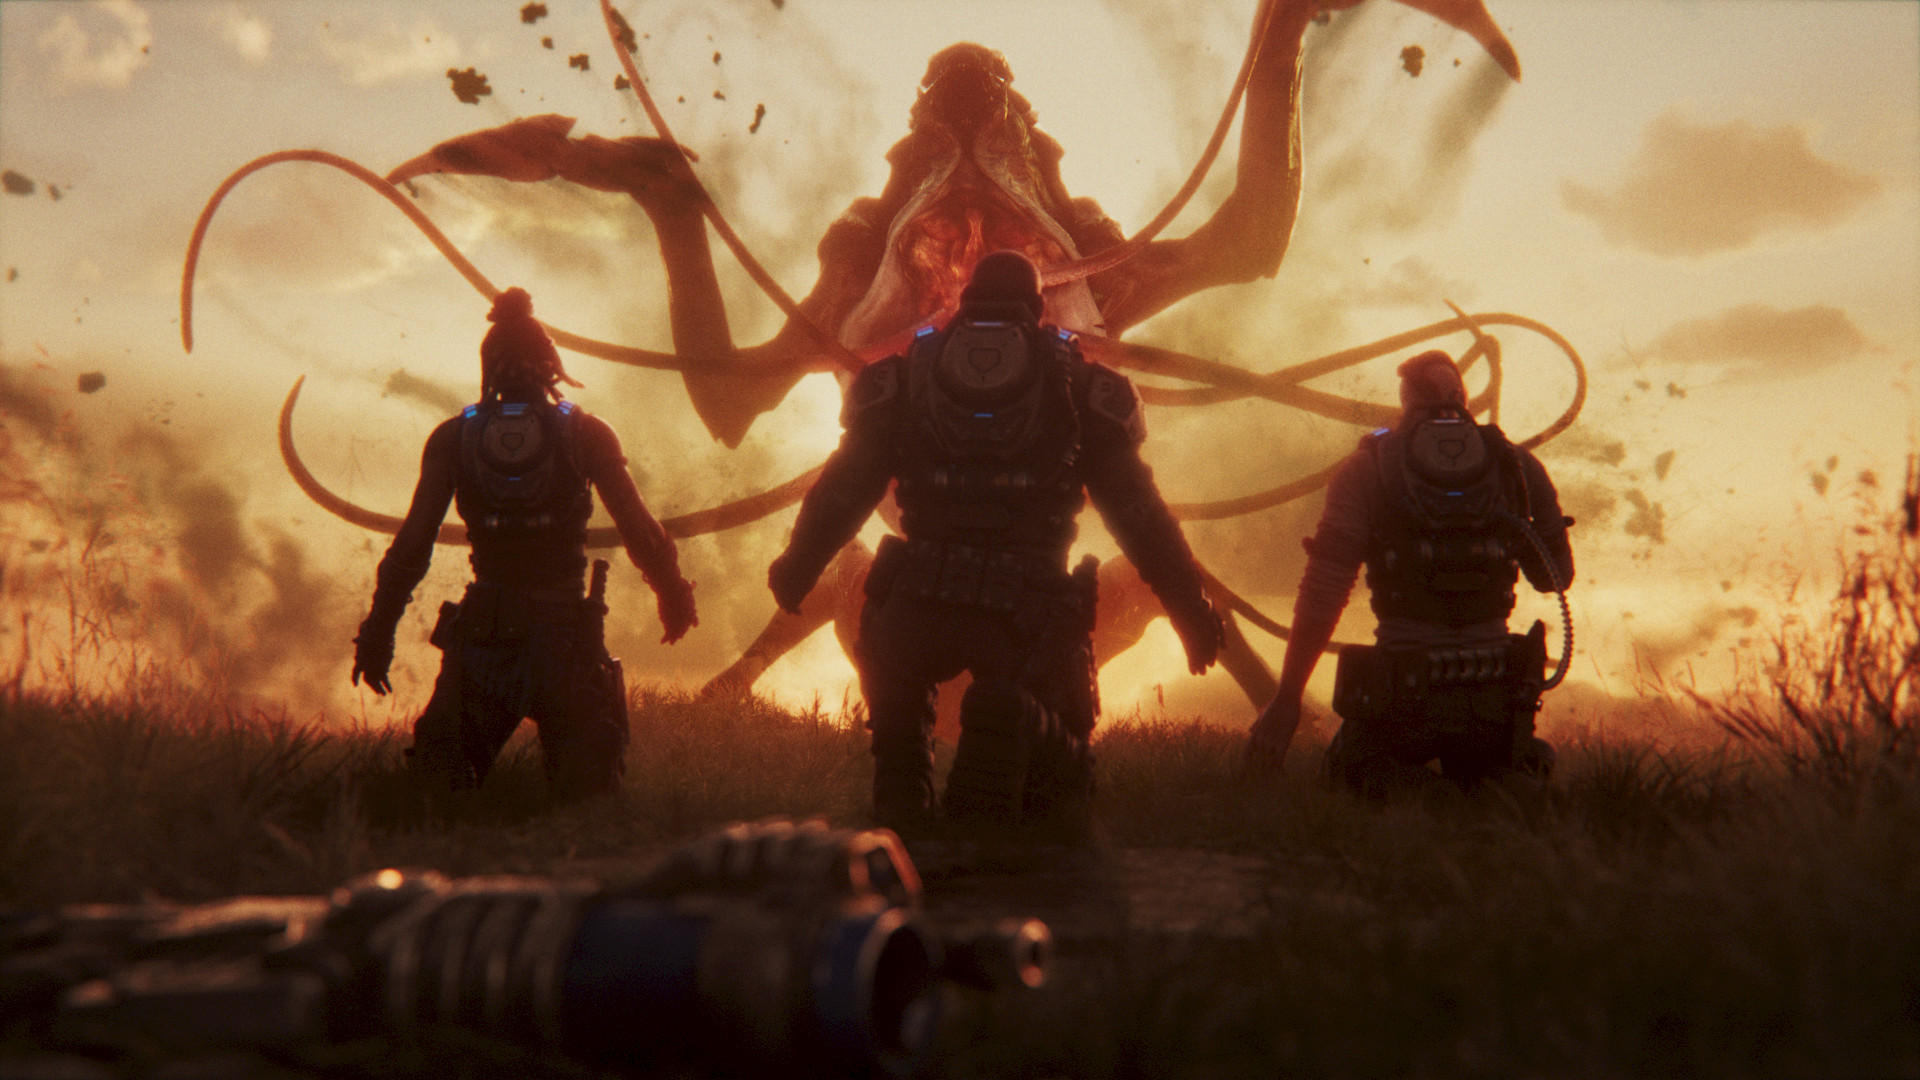 Gears of War 5's new co-op mode, Escape, is fine